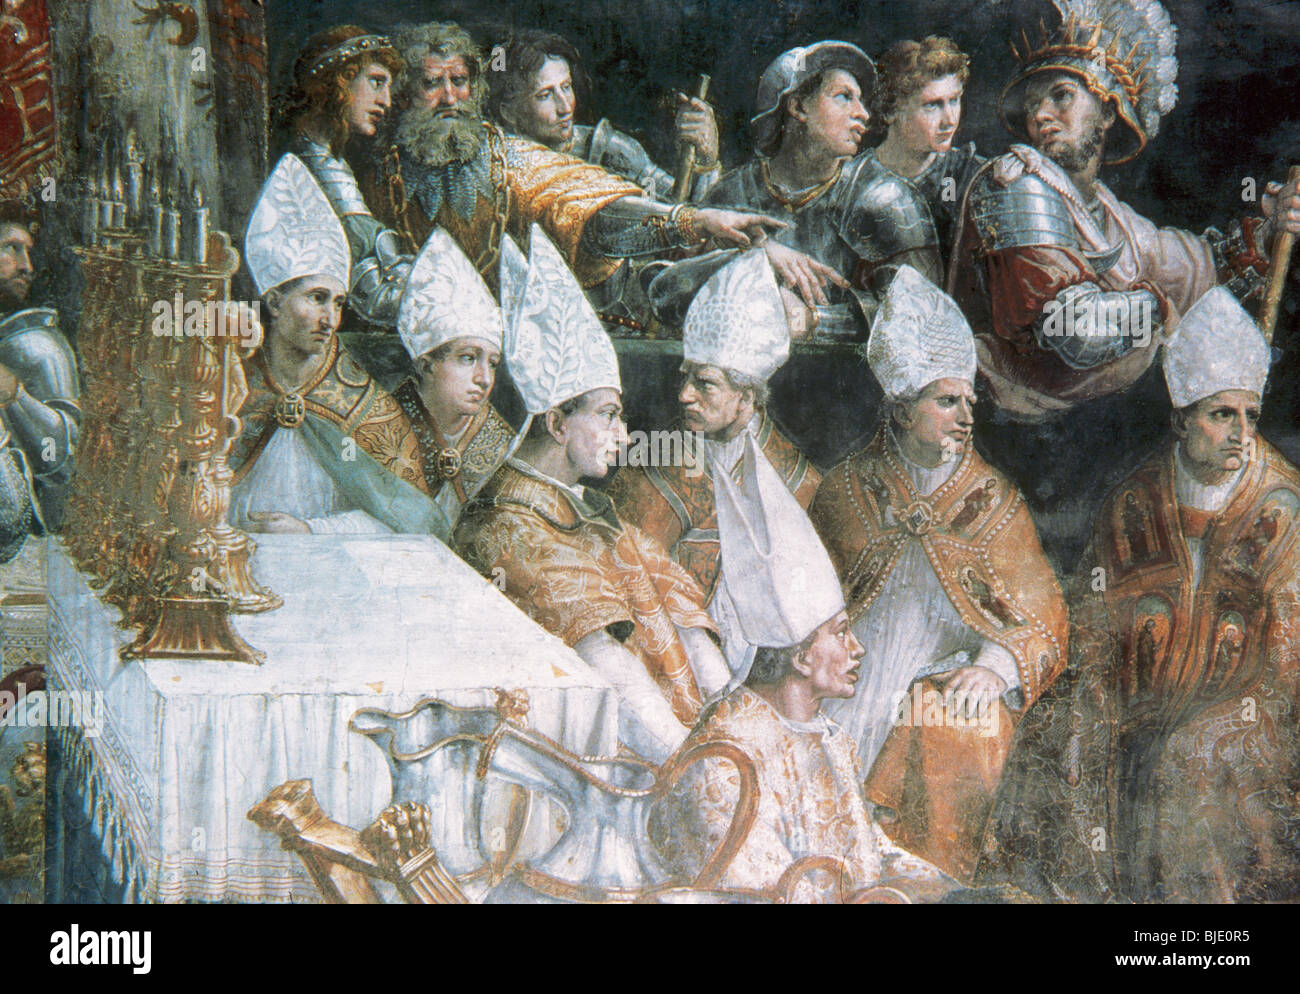 Raffaello, Raffaello Santi o Sanzio, chiamato (Urbino, 1483-Roma, 1520). Pittore italiano. Incoronazione di Carlo Magno. Vaticano. Foto Stock